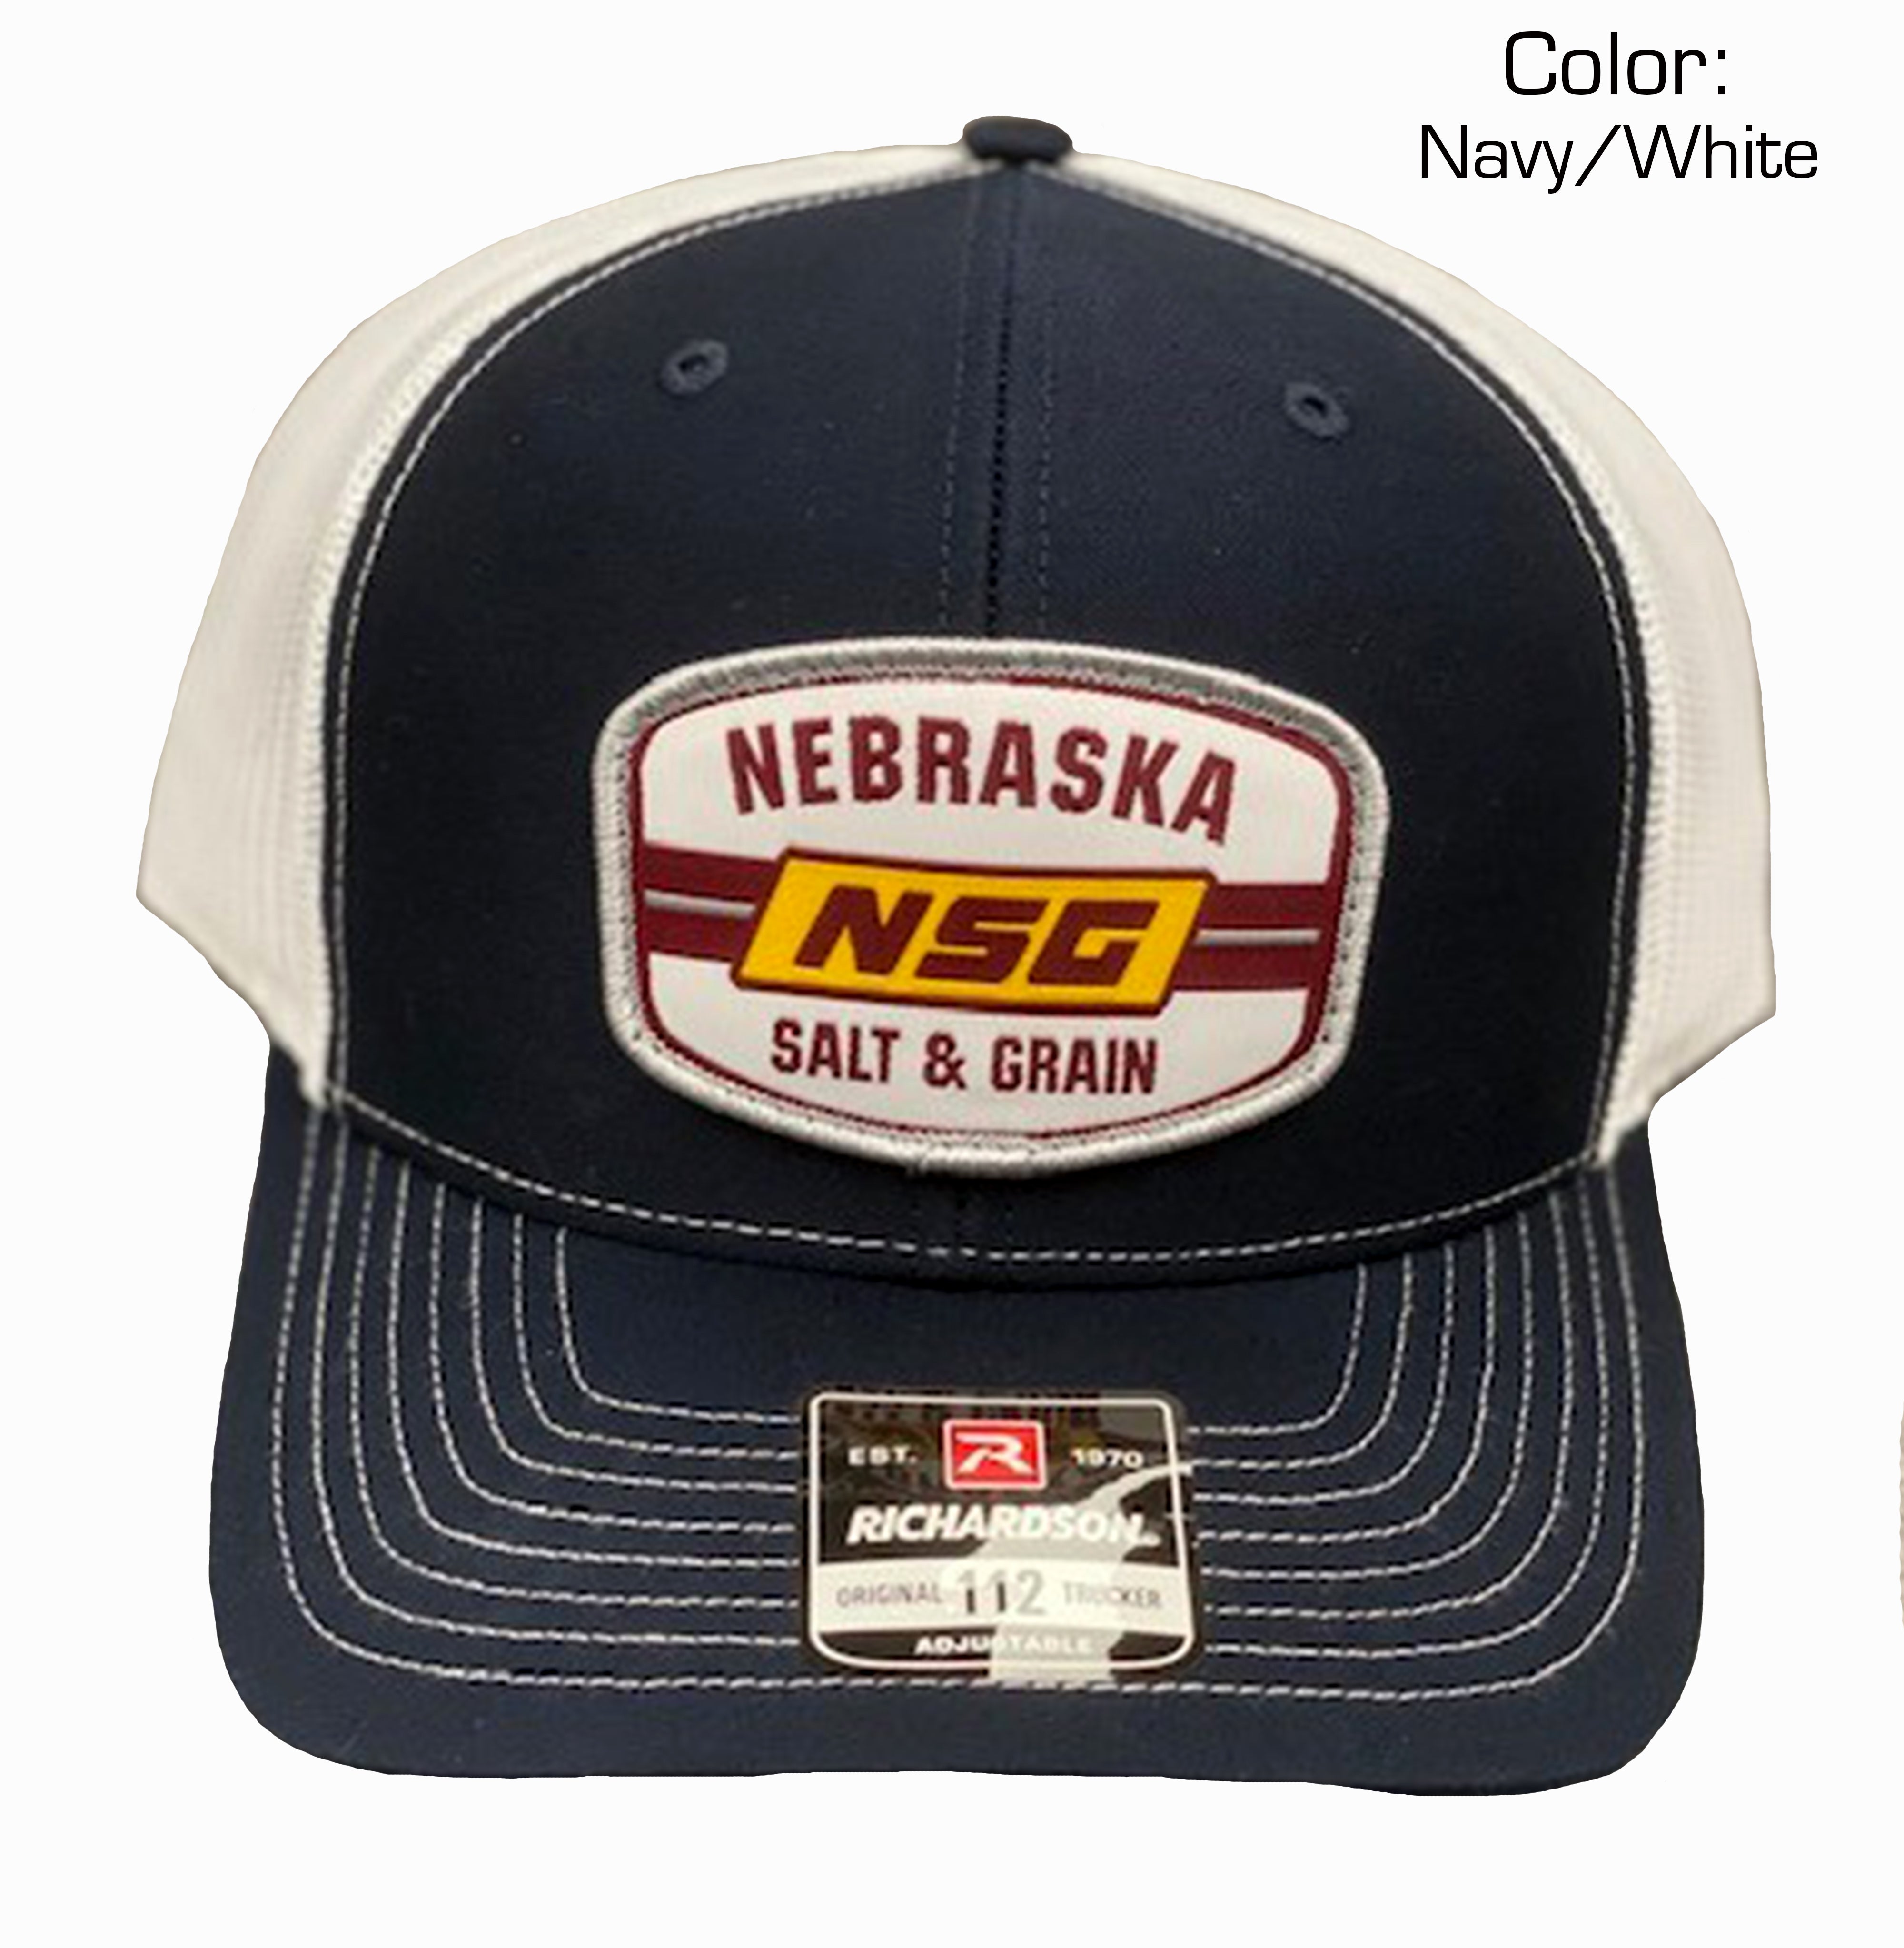 Nebraska Patch Trucker Hat